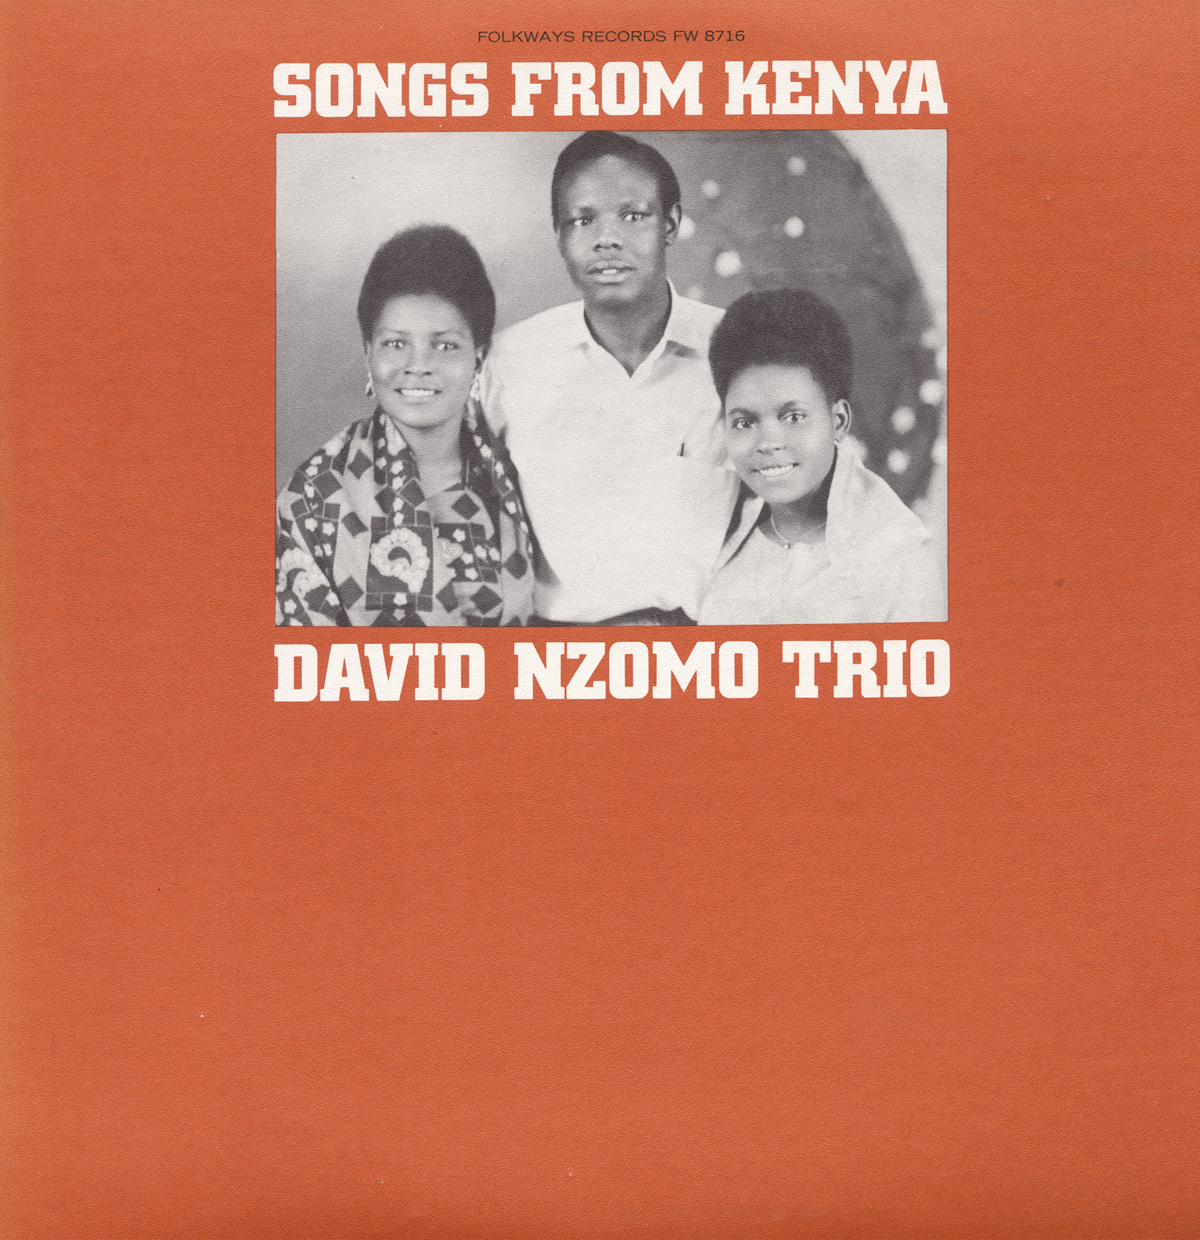 SONGS FROM KENYA